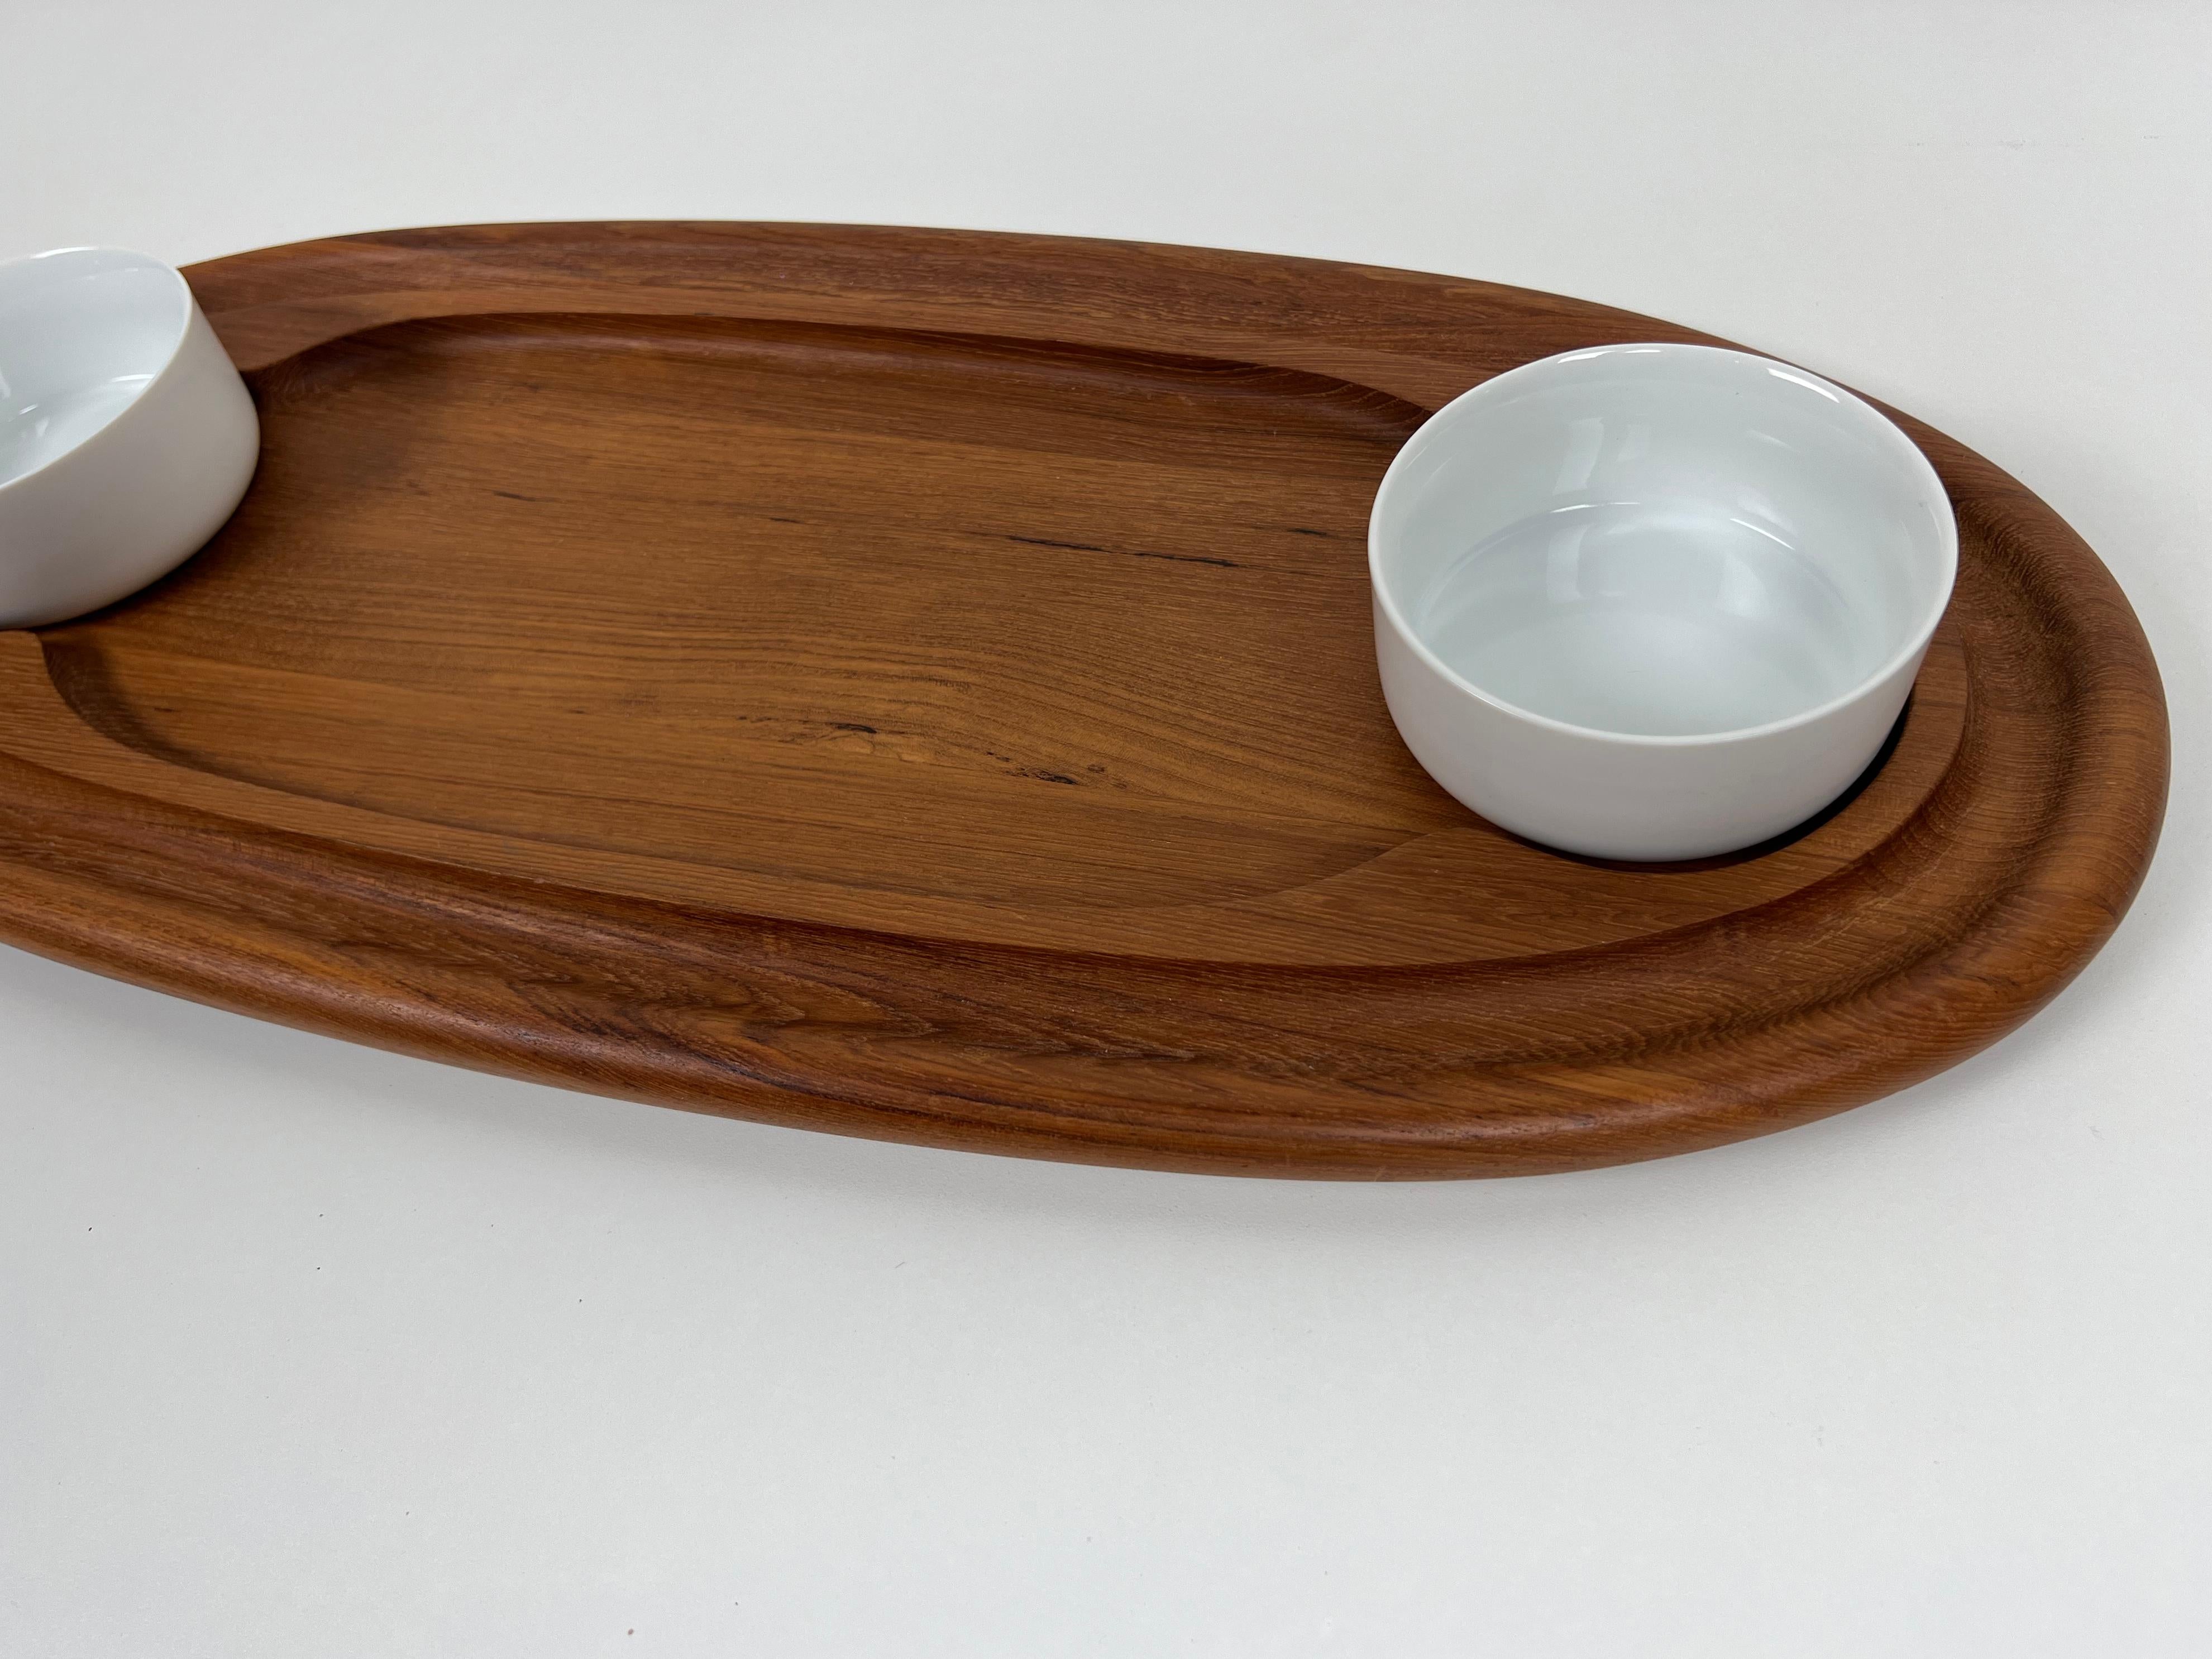 Teak Serving Platter with Bowls by Jens Quistgaard for Dansk 1